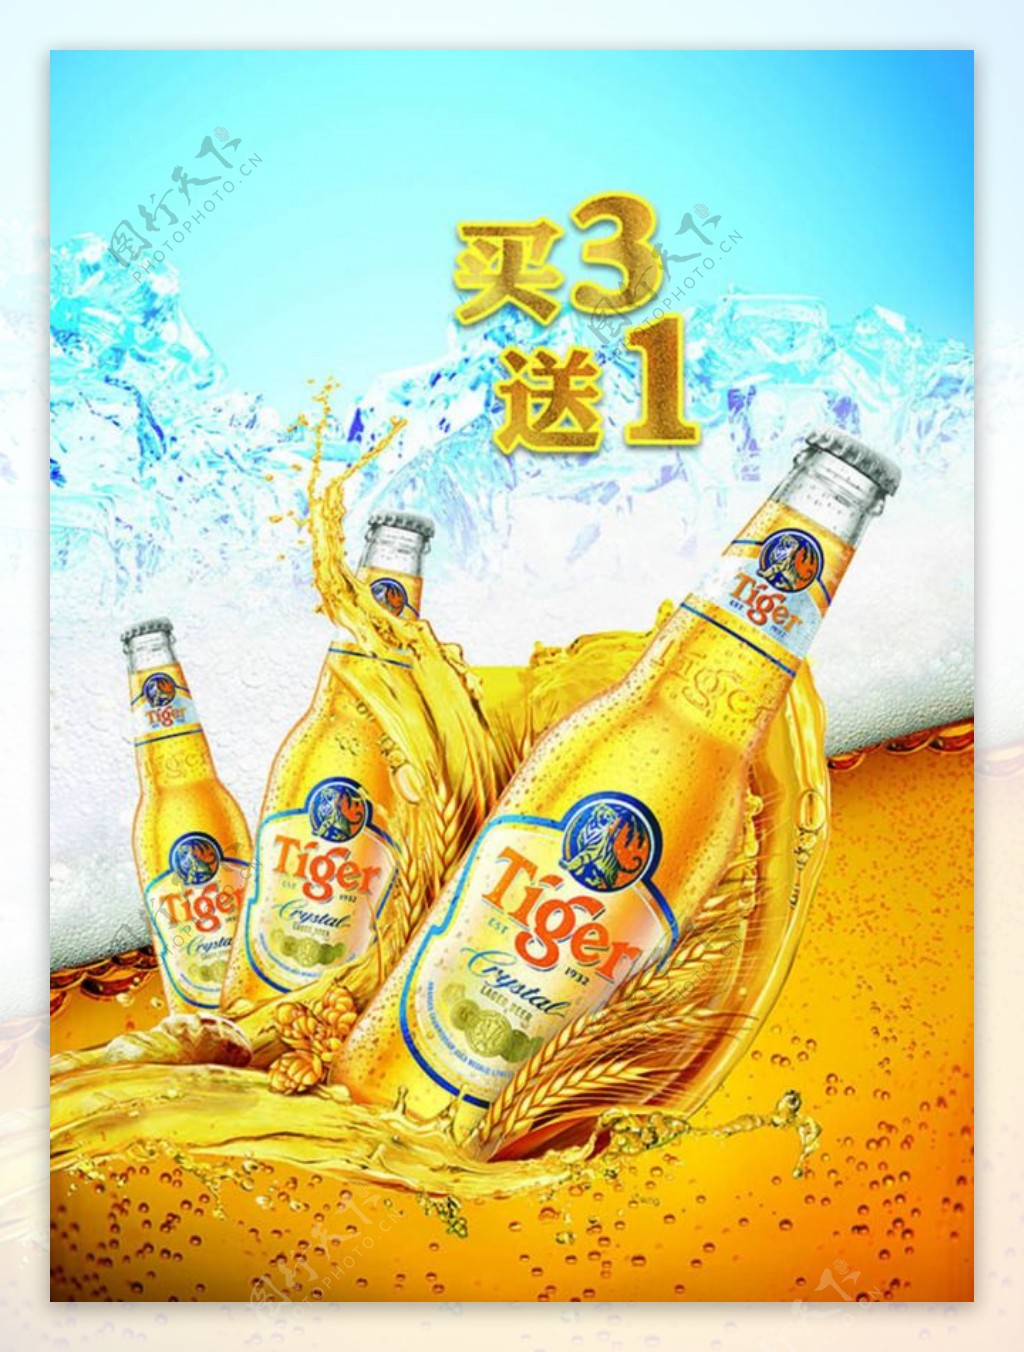 虎牌啤酒黄金酒水创意促销广告海报设计